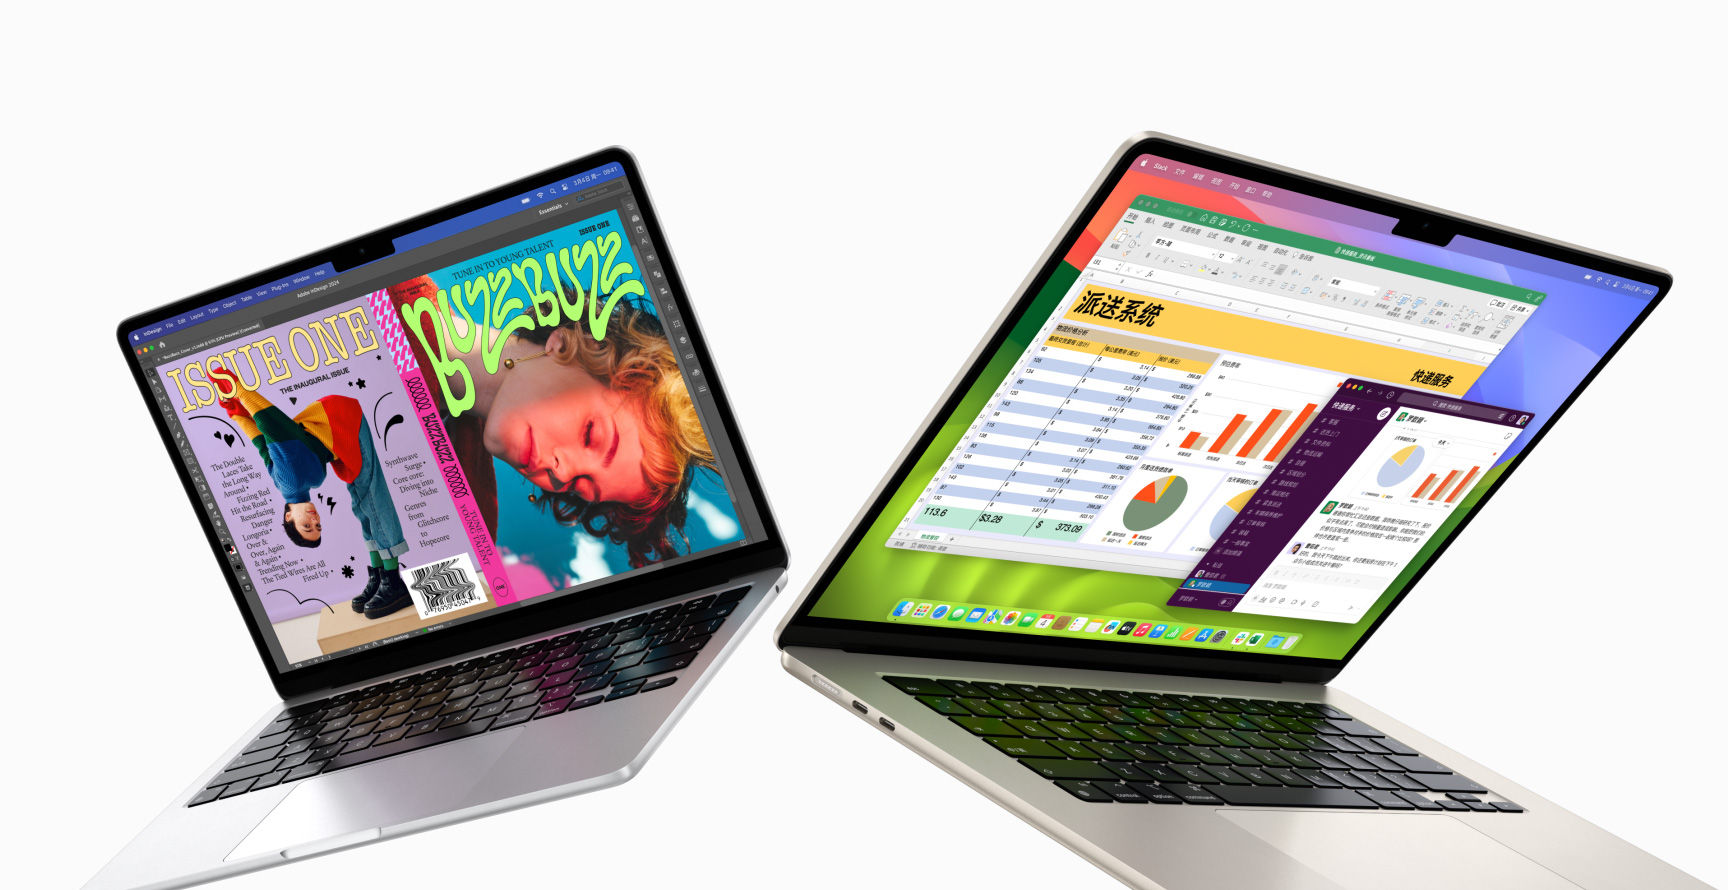 13 英寸 MacBook Air 在左侧，15 英寸 MacBook Air 在右侧，均处于半开合状态。13 英寸屏幕展示使用 InDesign 打造的亮丽多彩的电子杂志封面。15 英寸屏幕展示 Microsoft Excel 和 Slack。